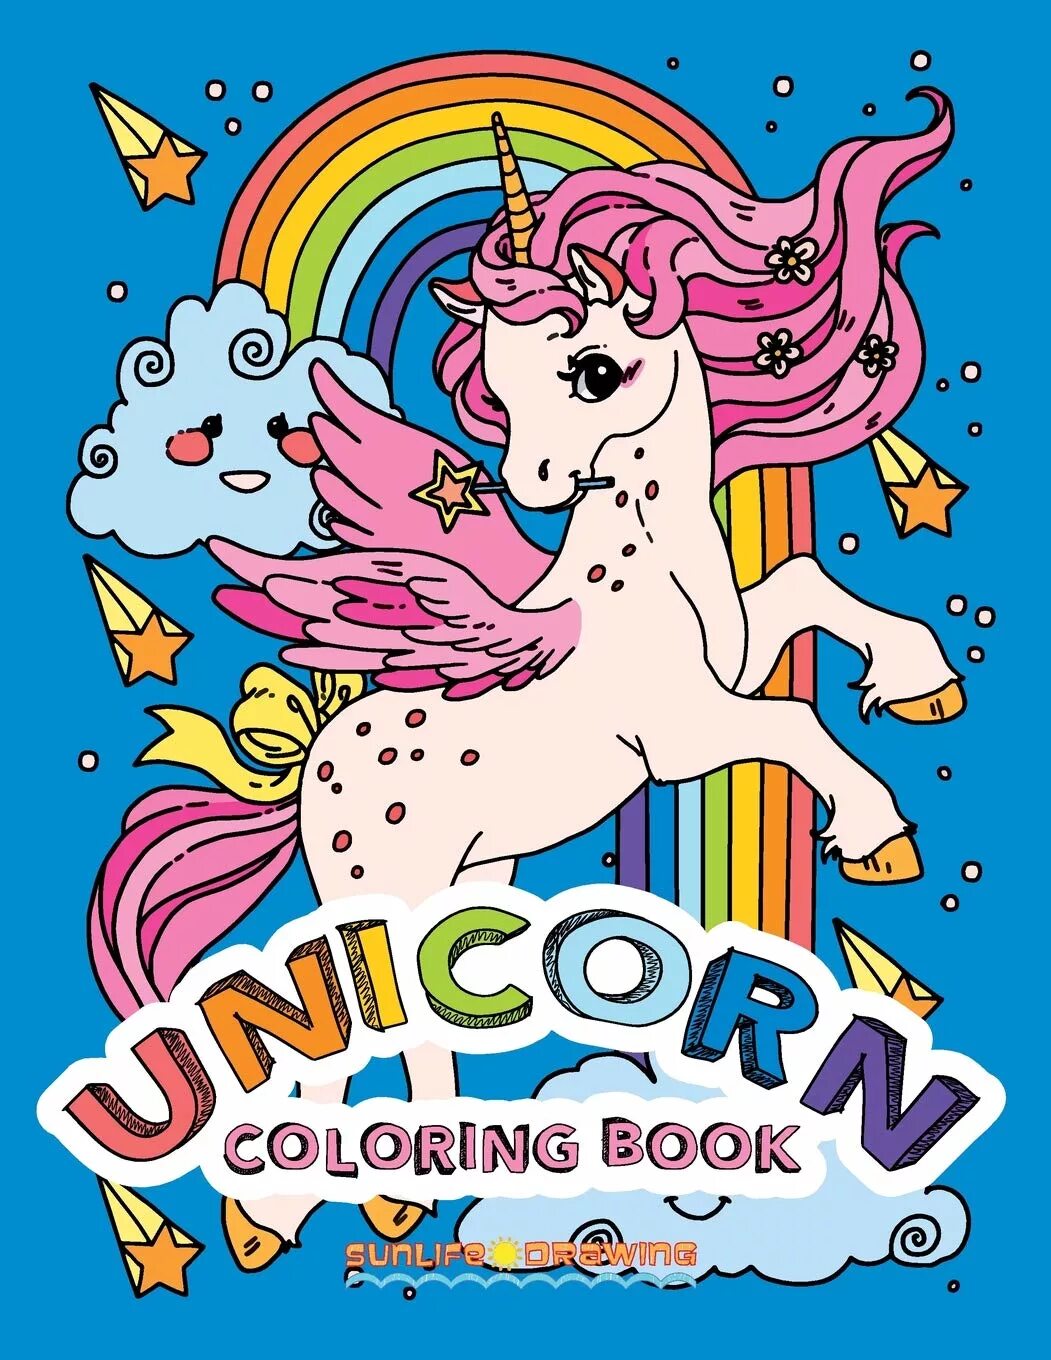 Unicorn книги. Книга с единорогом на обложке. Unicorn book книги. Fanbook Единороги. Unicorn book